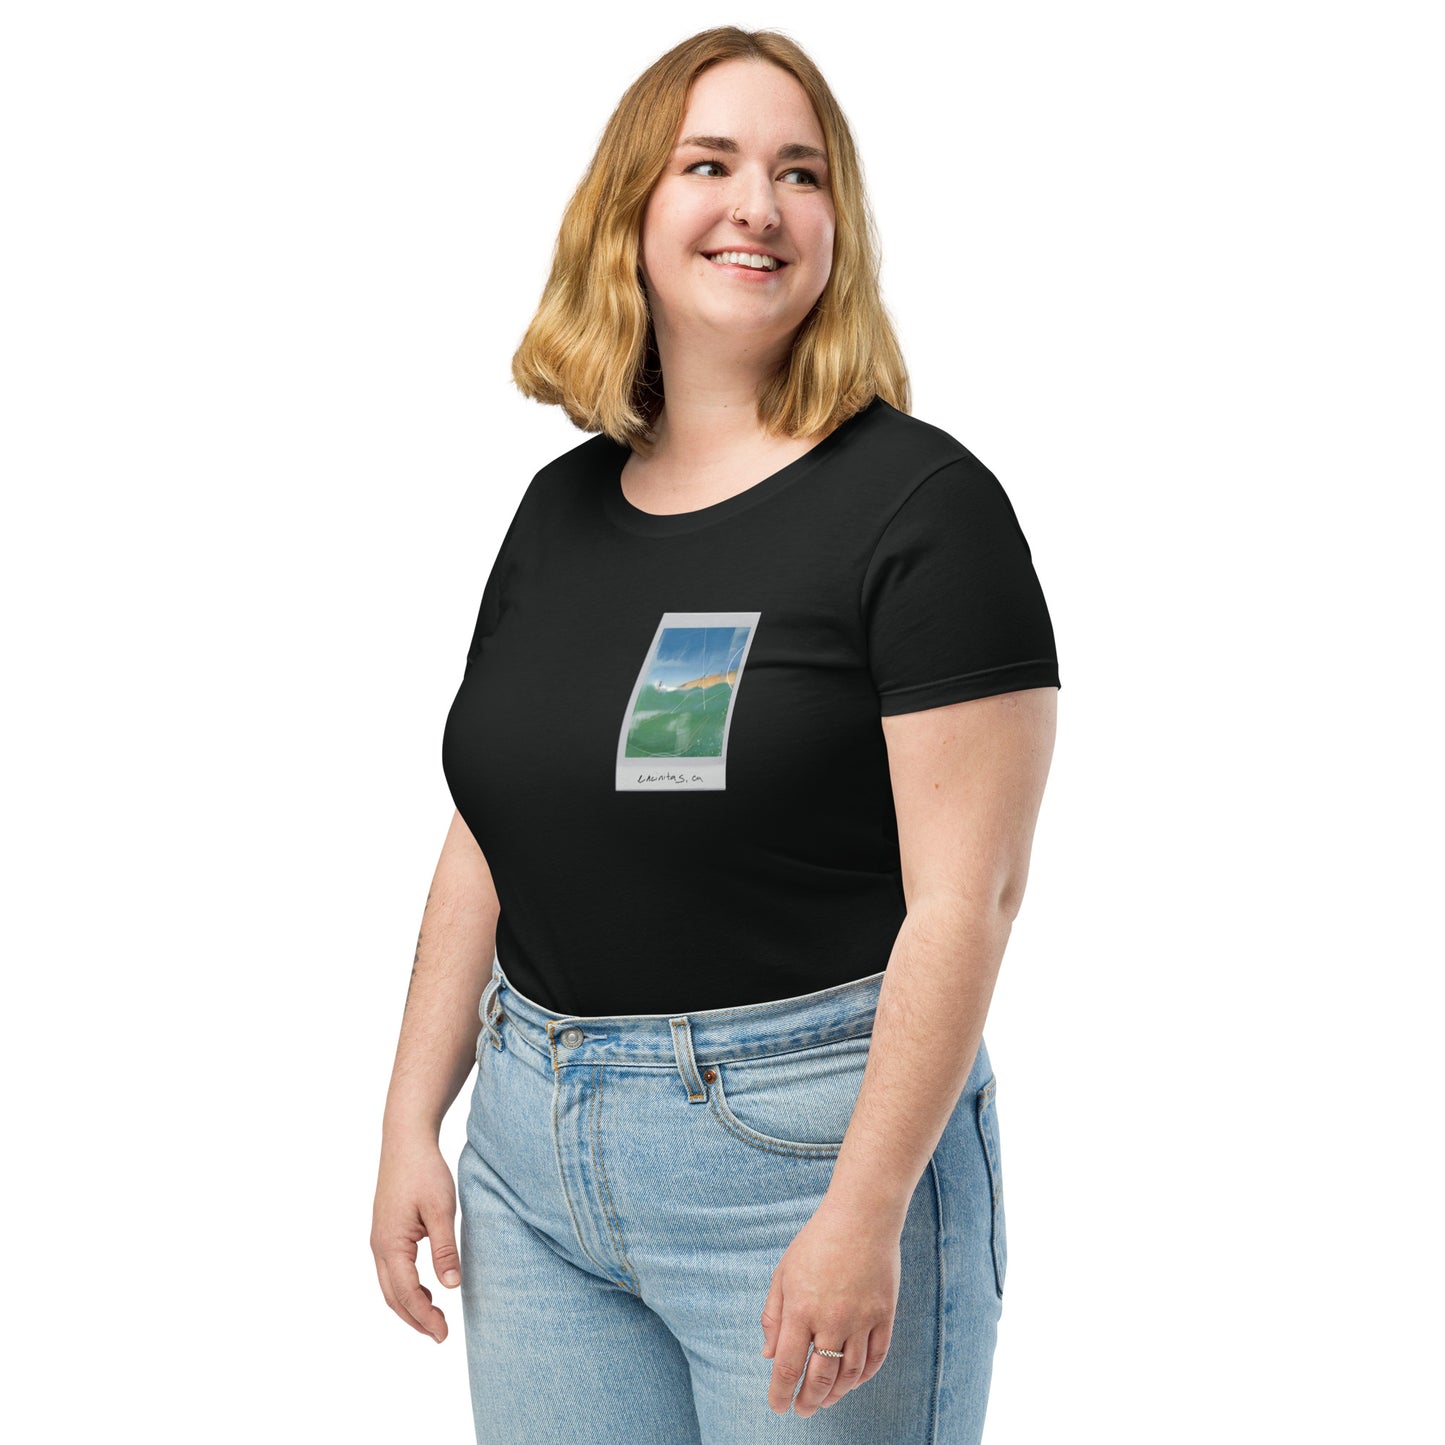 Encinitas Surfer Polaroid Fitted T-shirt